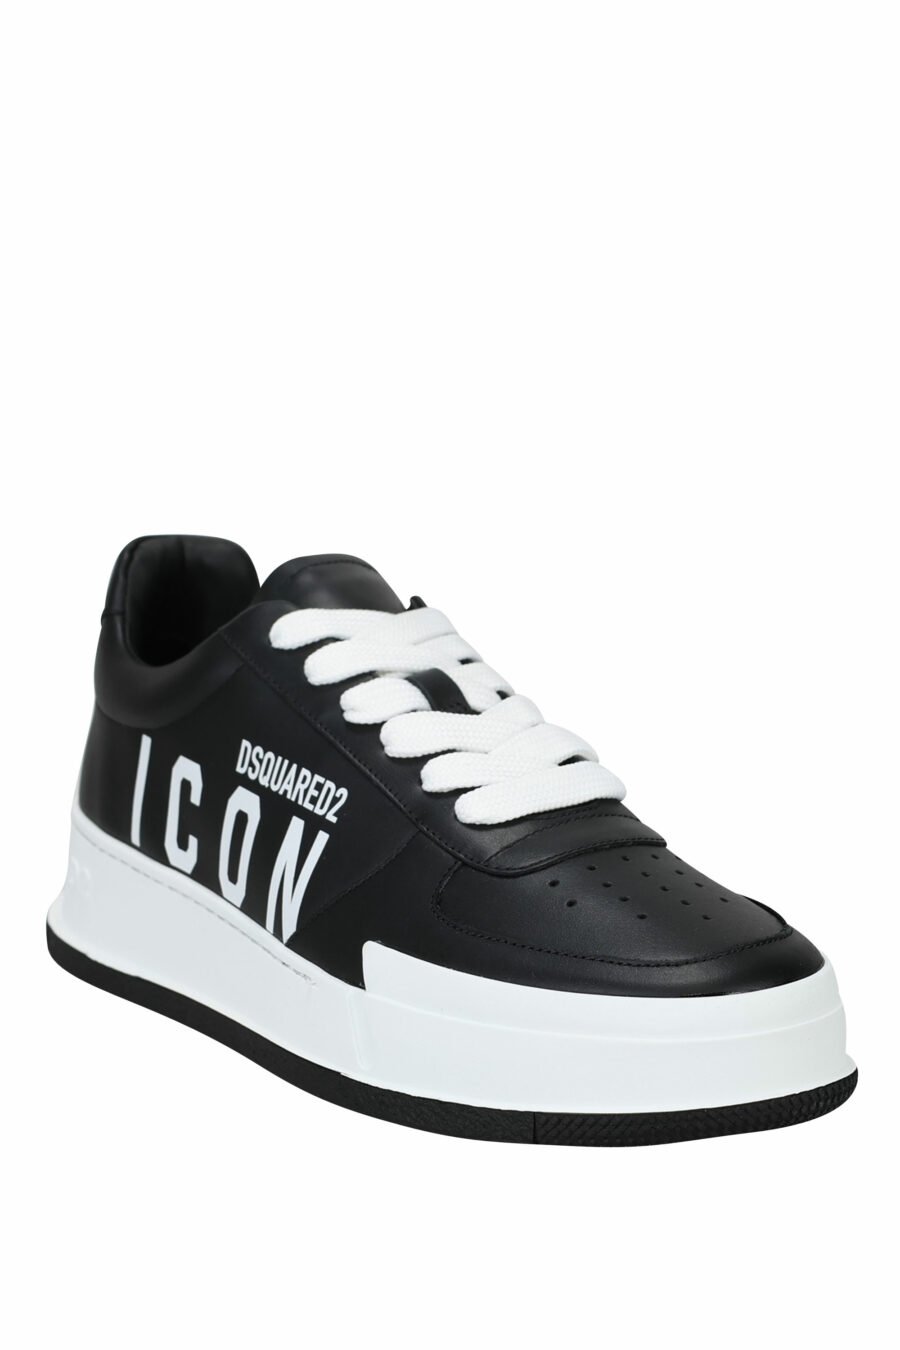 Zapatillas negras con logo "icon" y suela blanca - 8055777248911 1